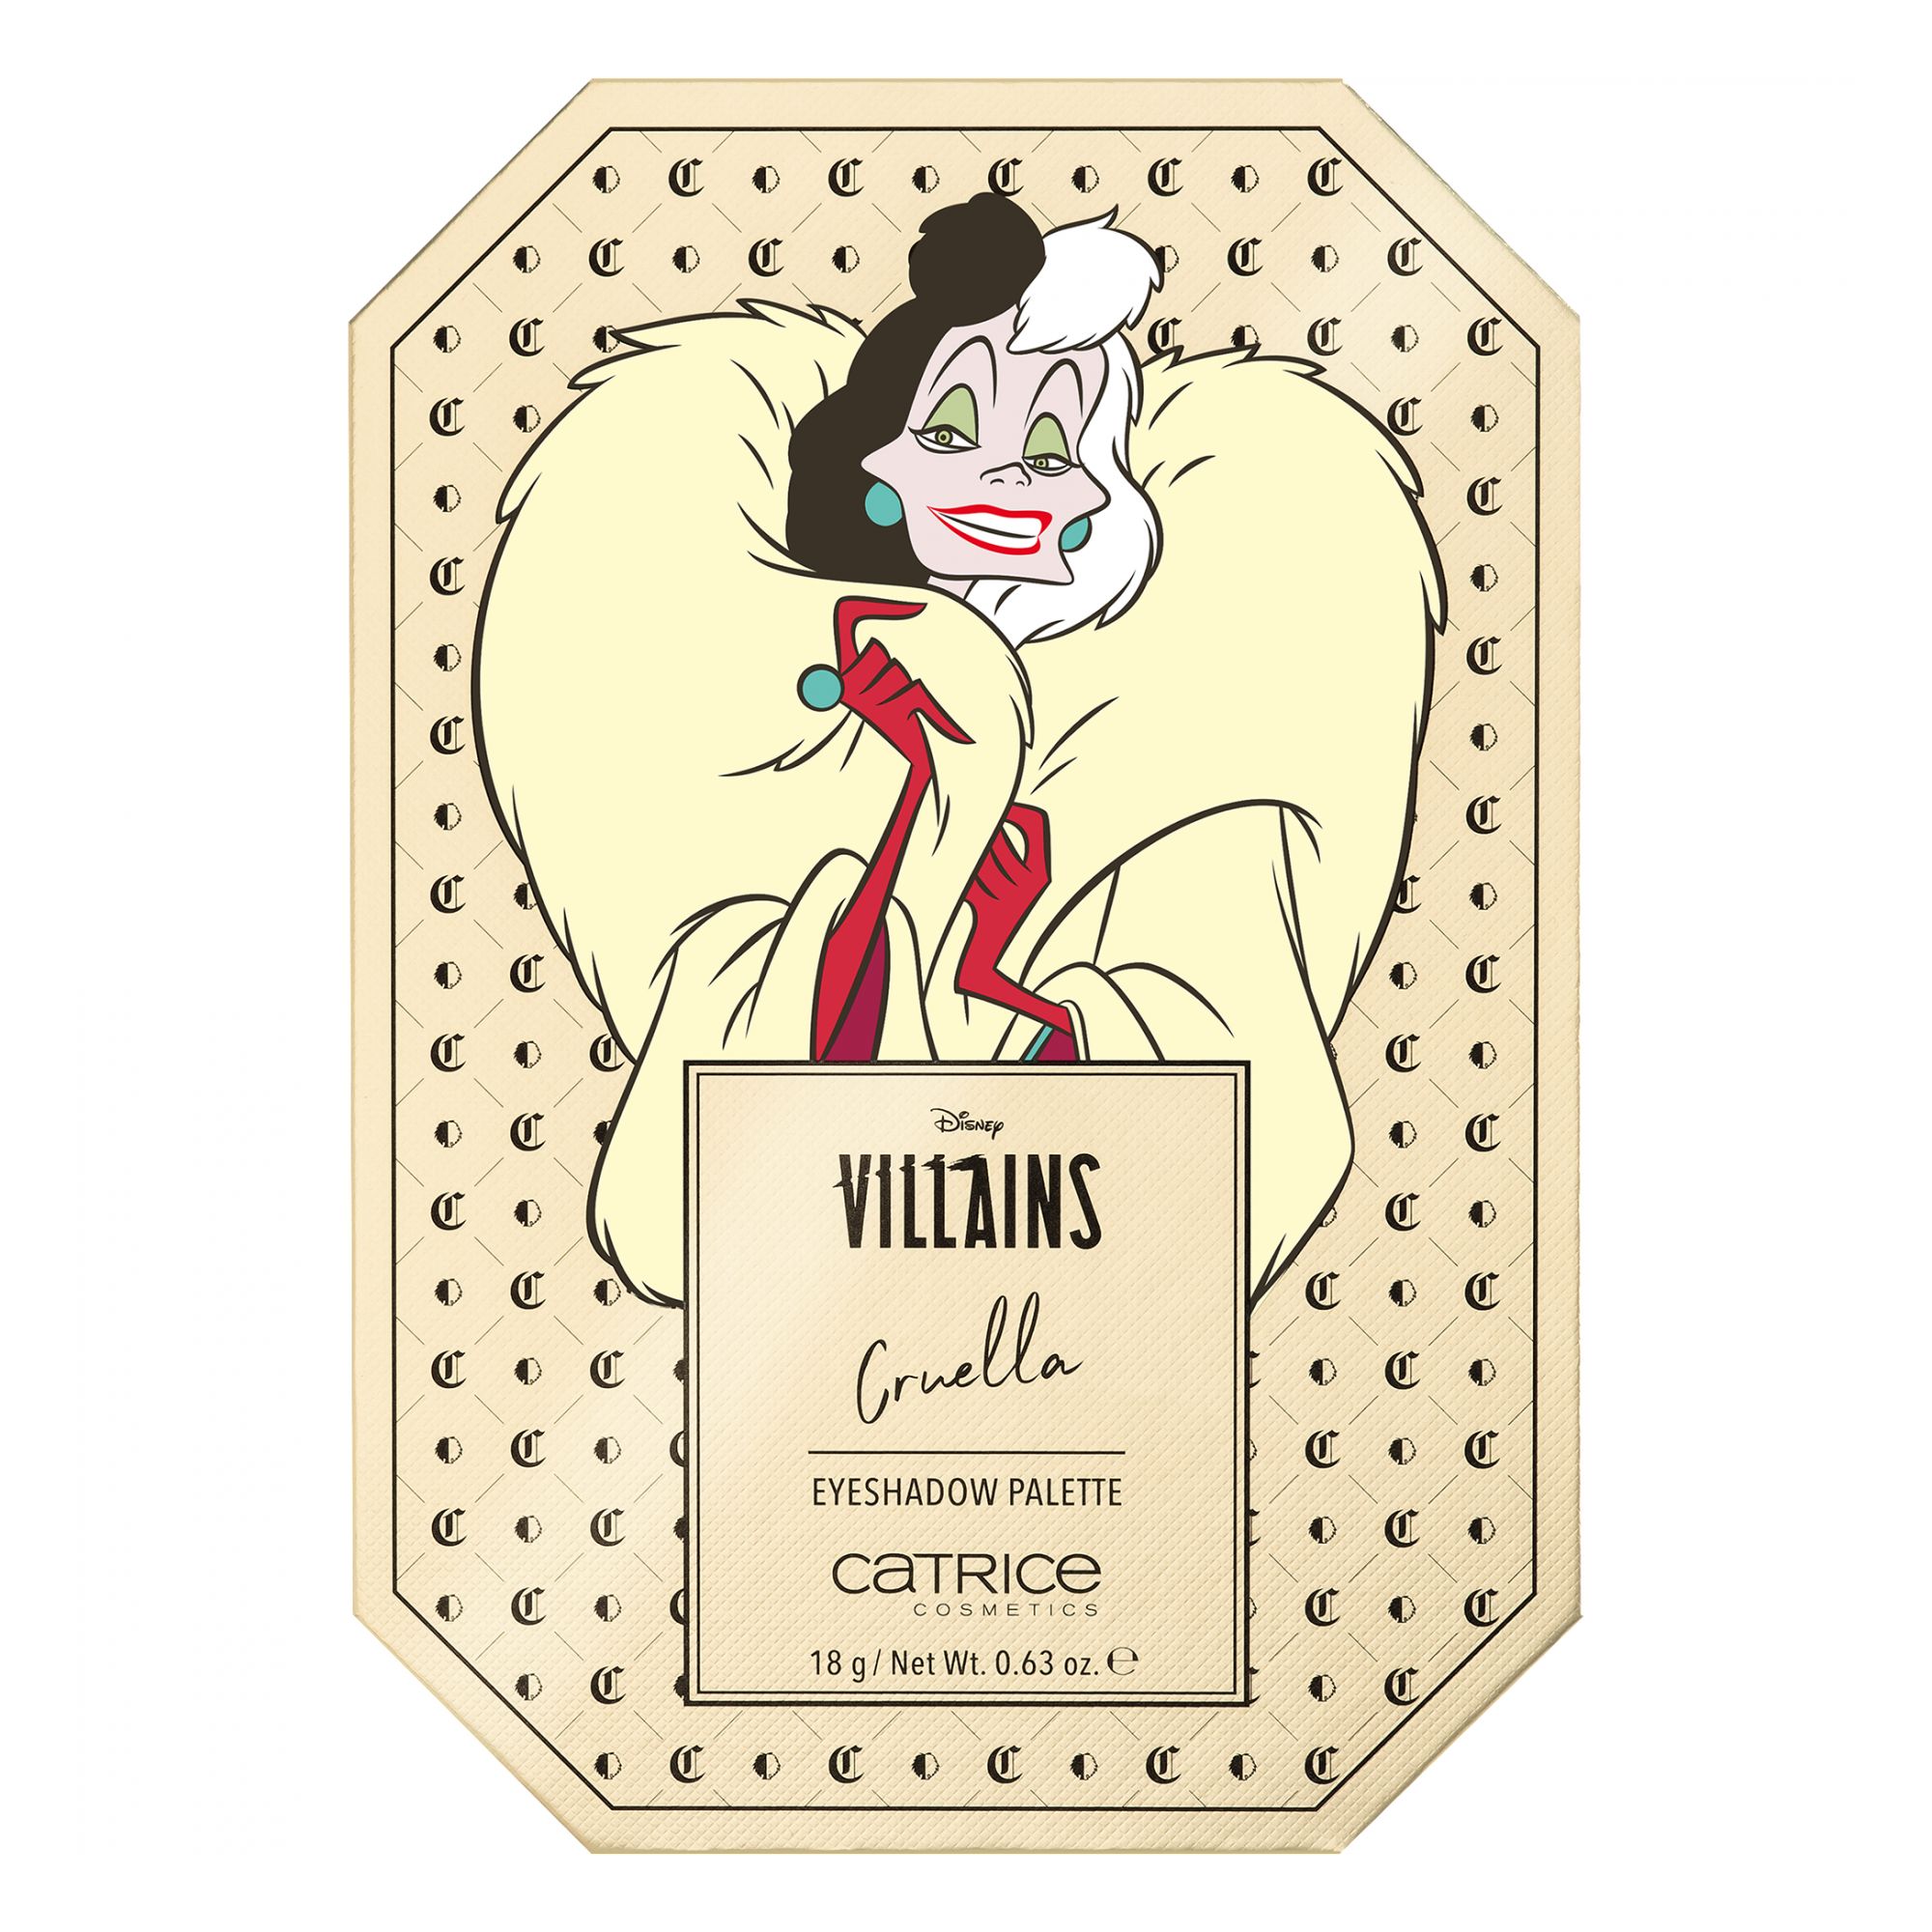 Disney Villains - Cruella Eyeshadow Palette